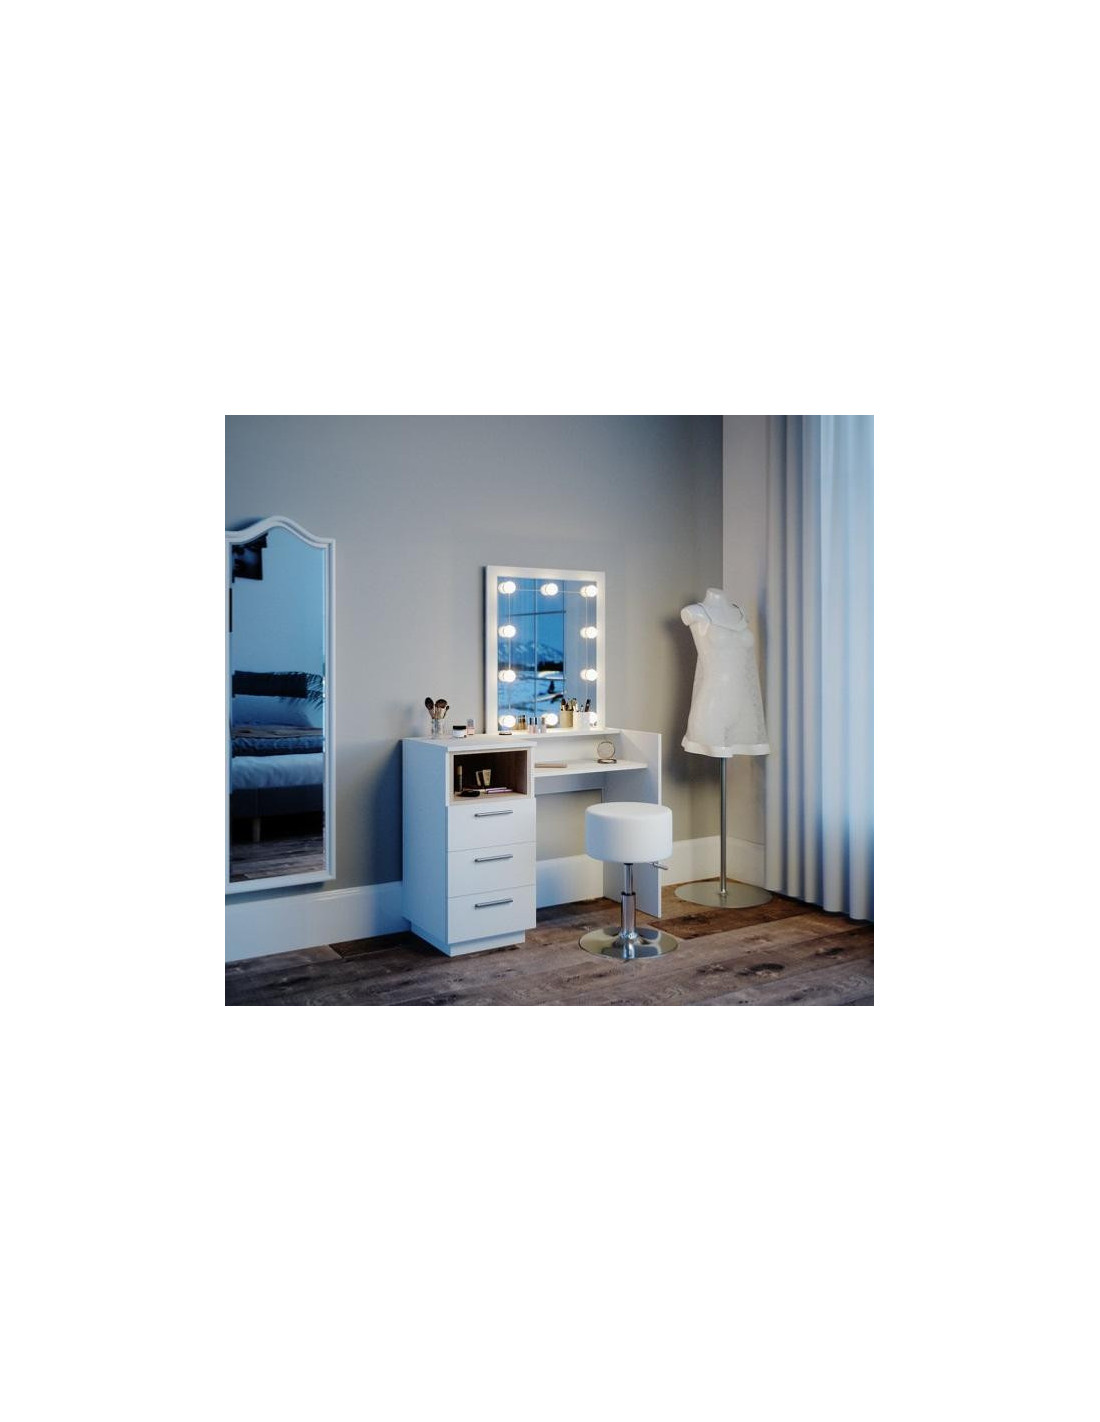 Coiffeuse épurée étagères et miroir LED blanc chêne Coiffeuse moderne -  Ciel & terre